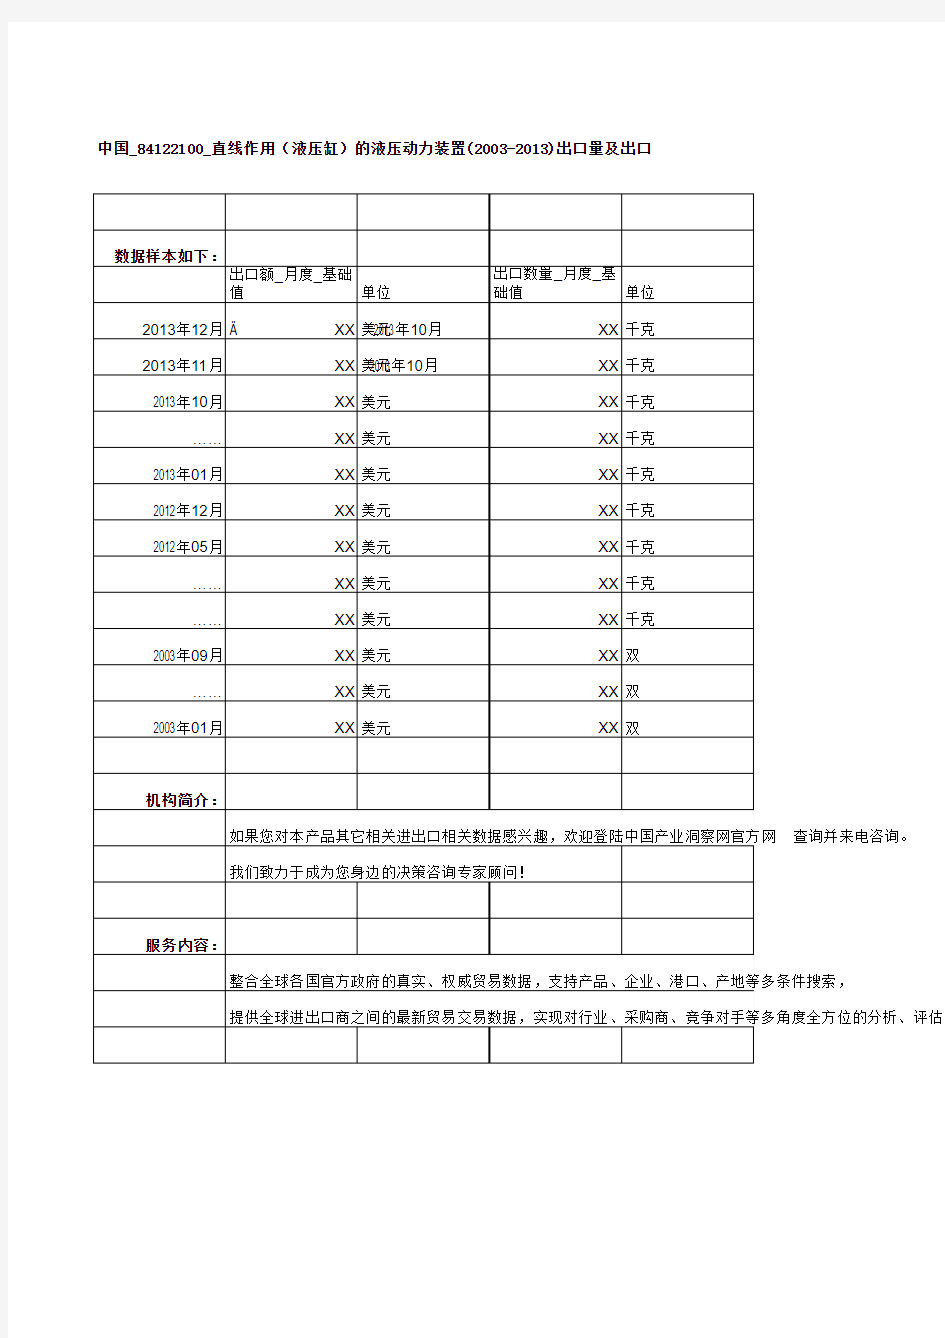 中国_84122100_直线作用(液压缸)的液压动力装置(2003-2013)出口量及出口额